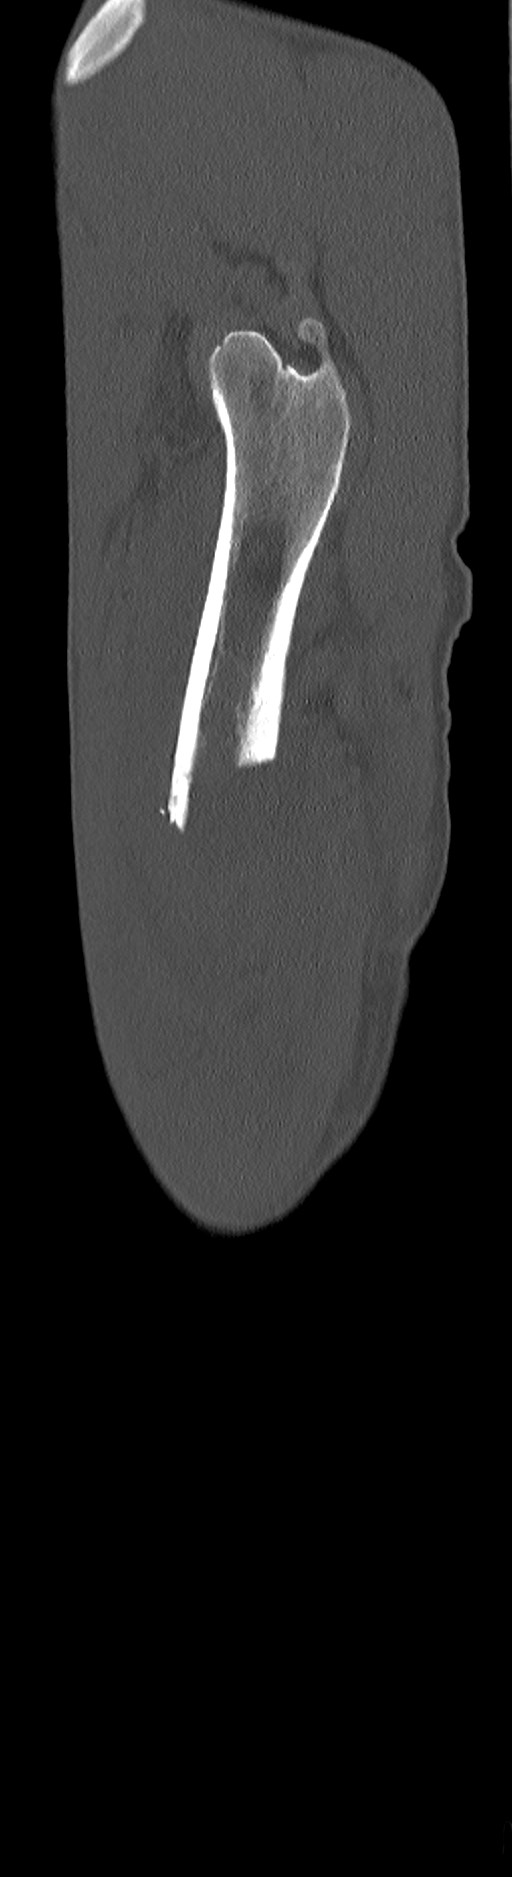 Chronic osteomyelitis (with sequestrum) (Radiopaedia 74813-85822 C 97).jpg